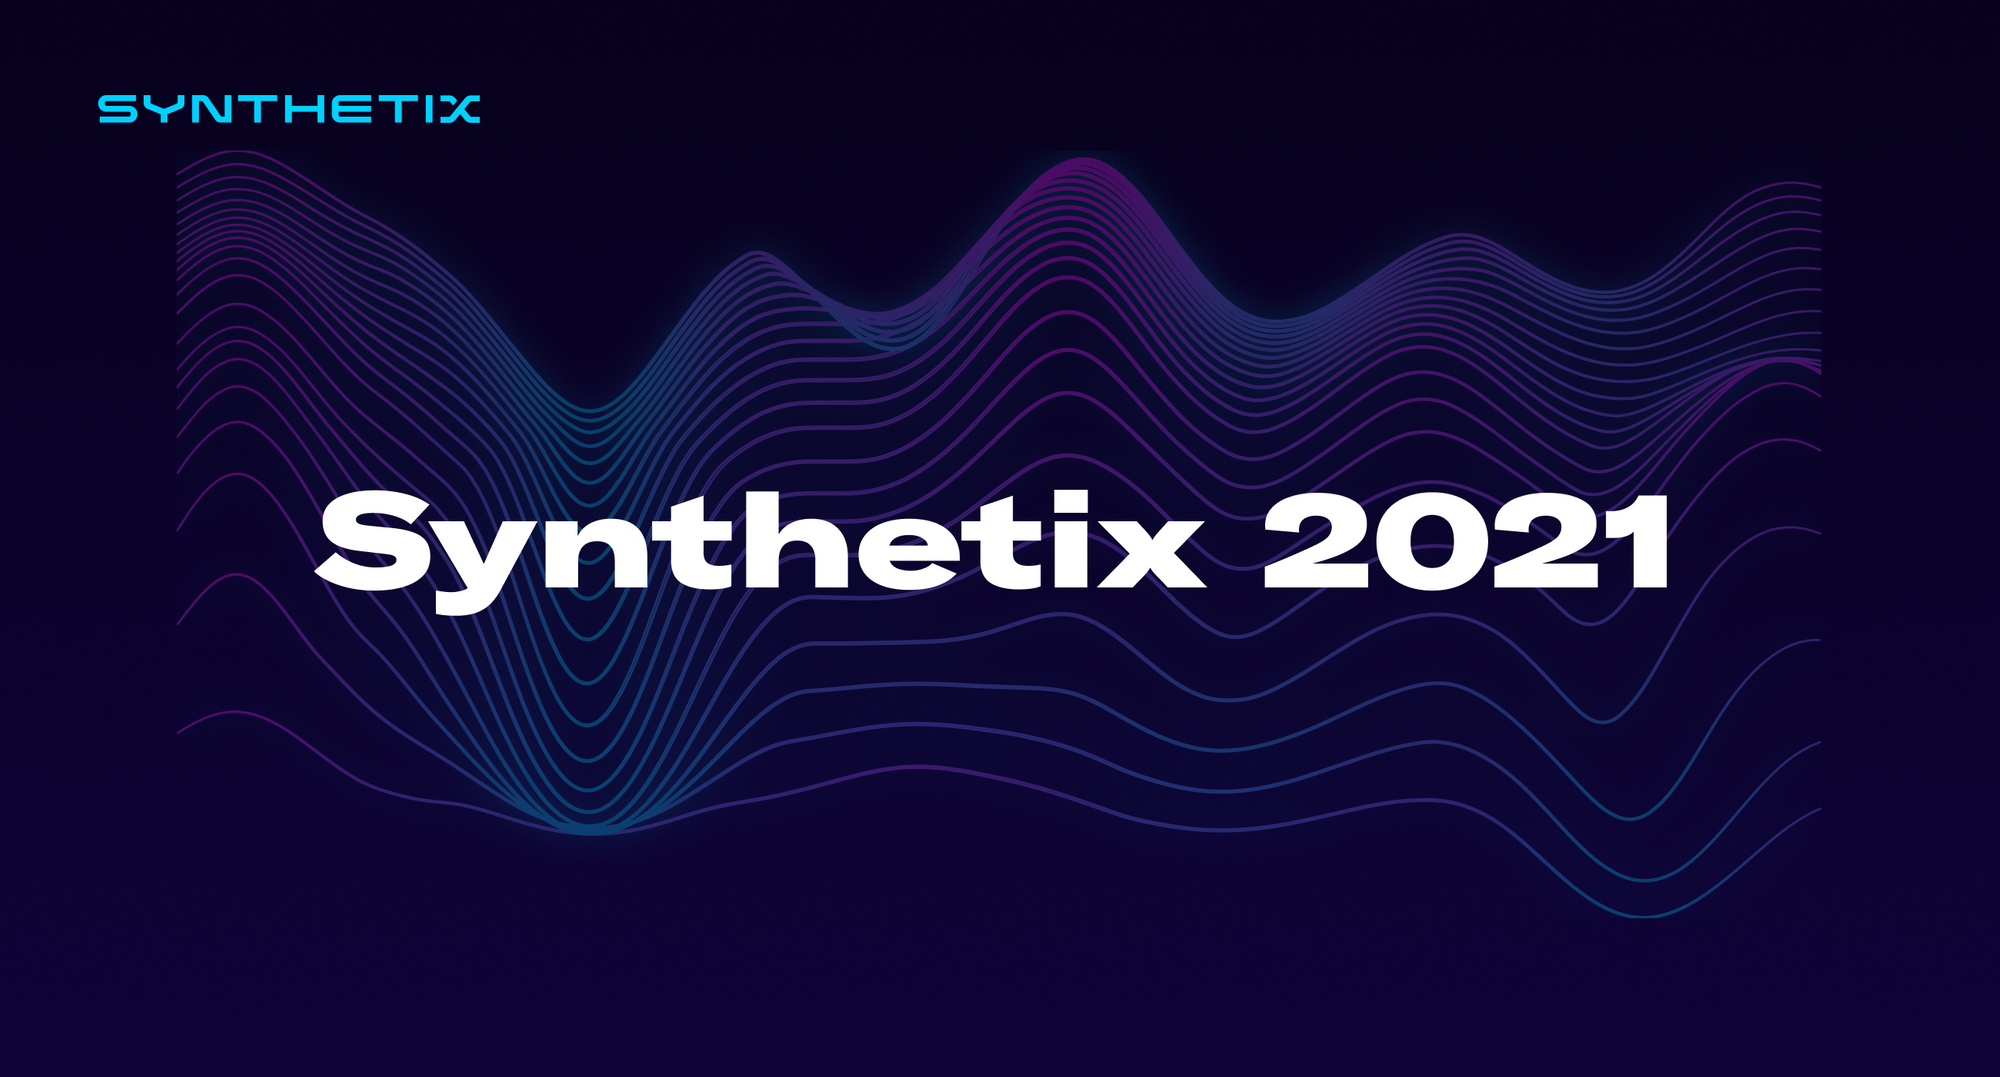 Synthetix 2021